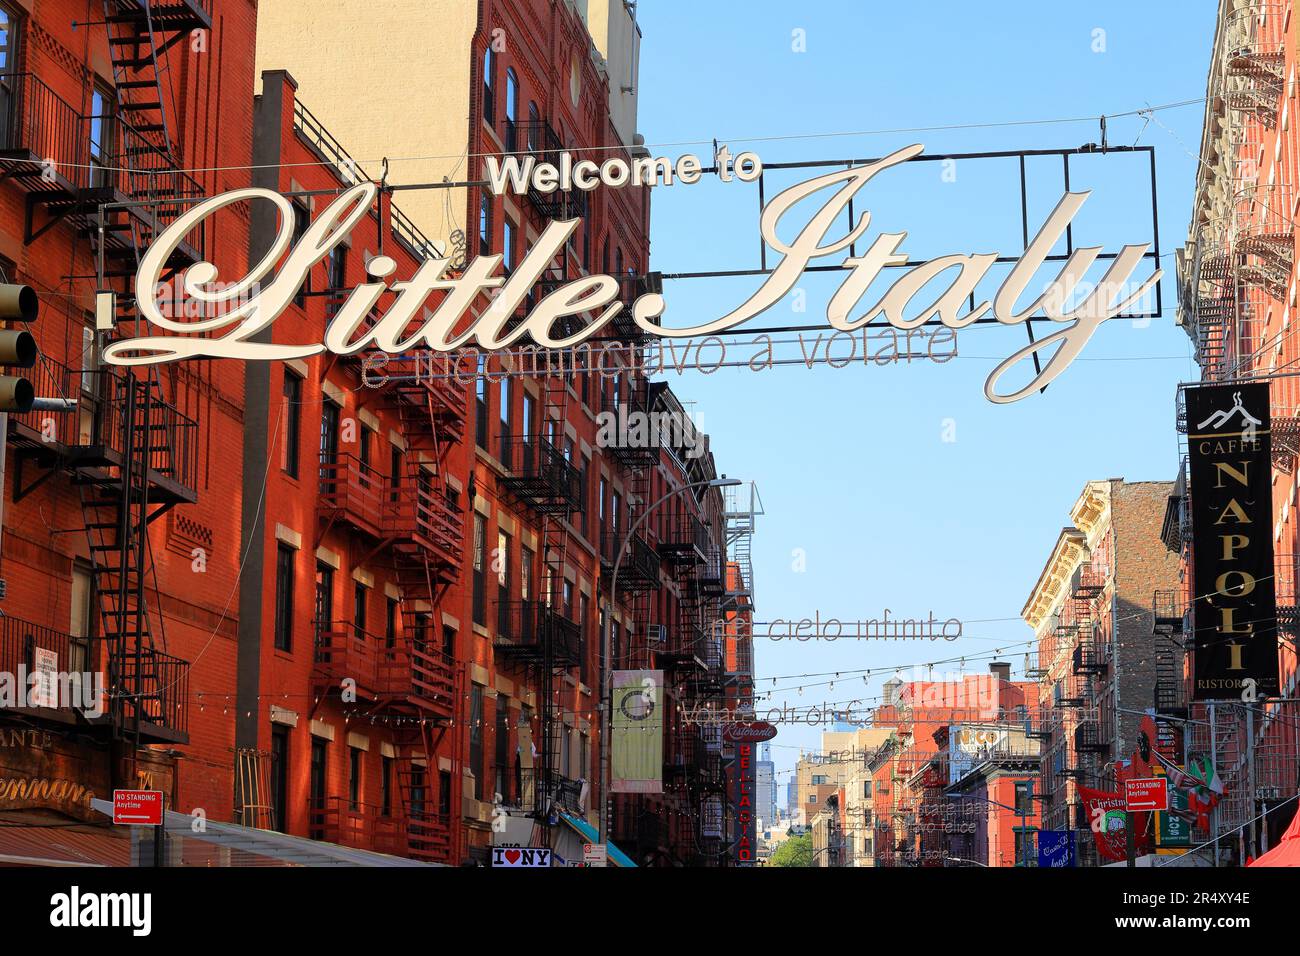 Un cartello Welcome to Little Italy a Lower Manhattan, New York, con le righe della canzone 'nel blu, dipinto di blu' di Domenico Modugno Foto Stock